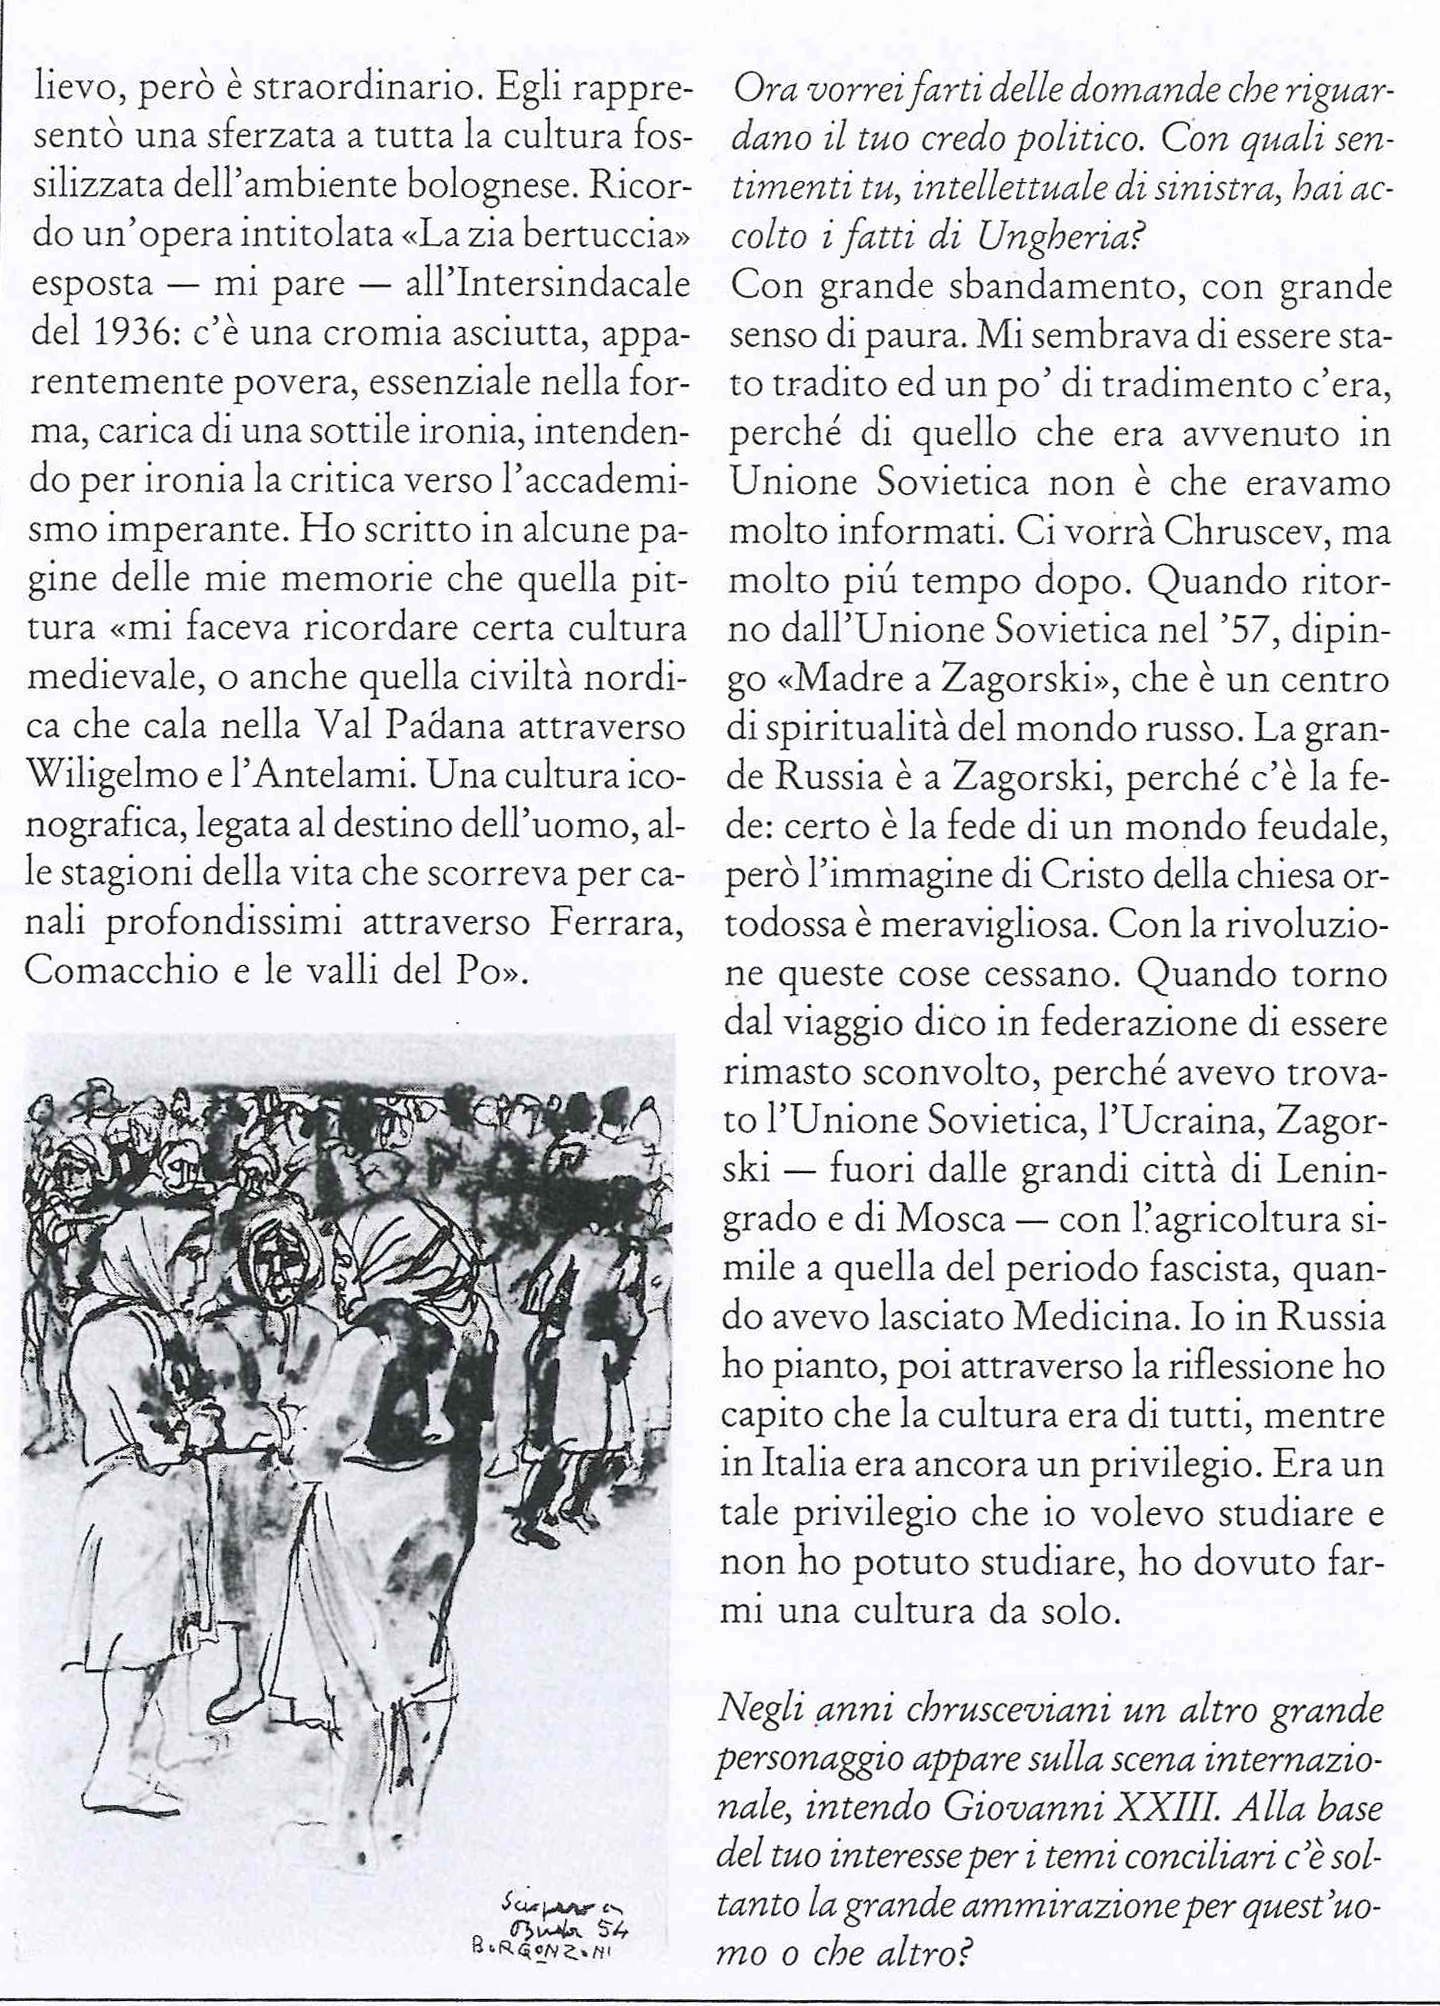 Intervista di L. Strozzieri a A. Borgonzoni, in M.A. Baitello, L. Strozzieri, Borgonzoni, Pescara, Artechiara, 1986, pp. 51-54 e 58